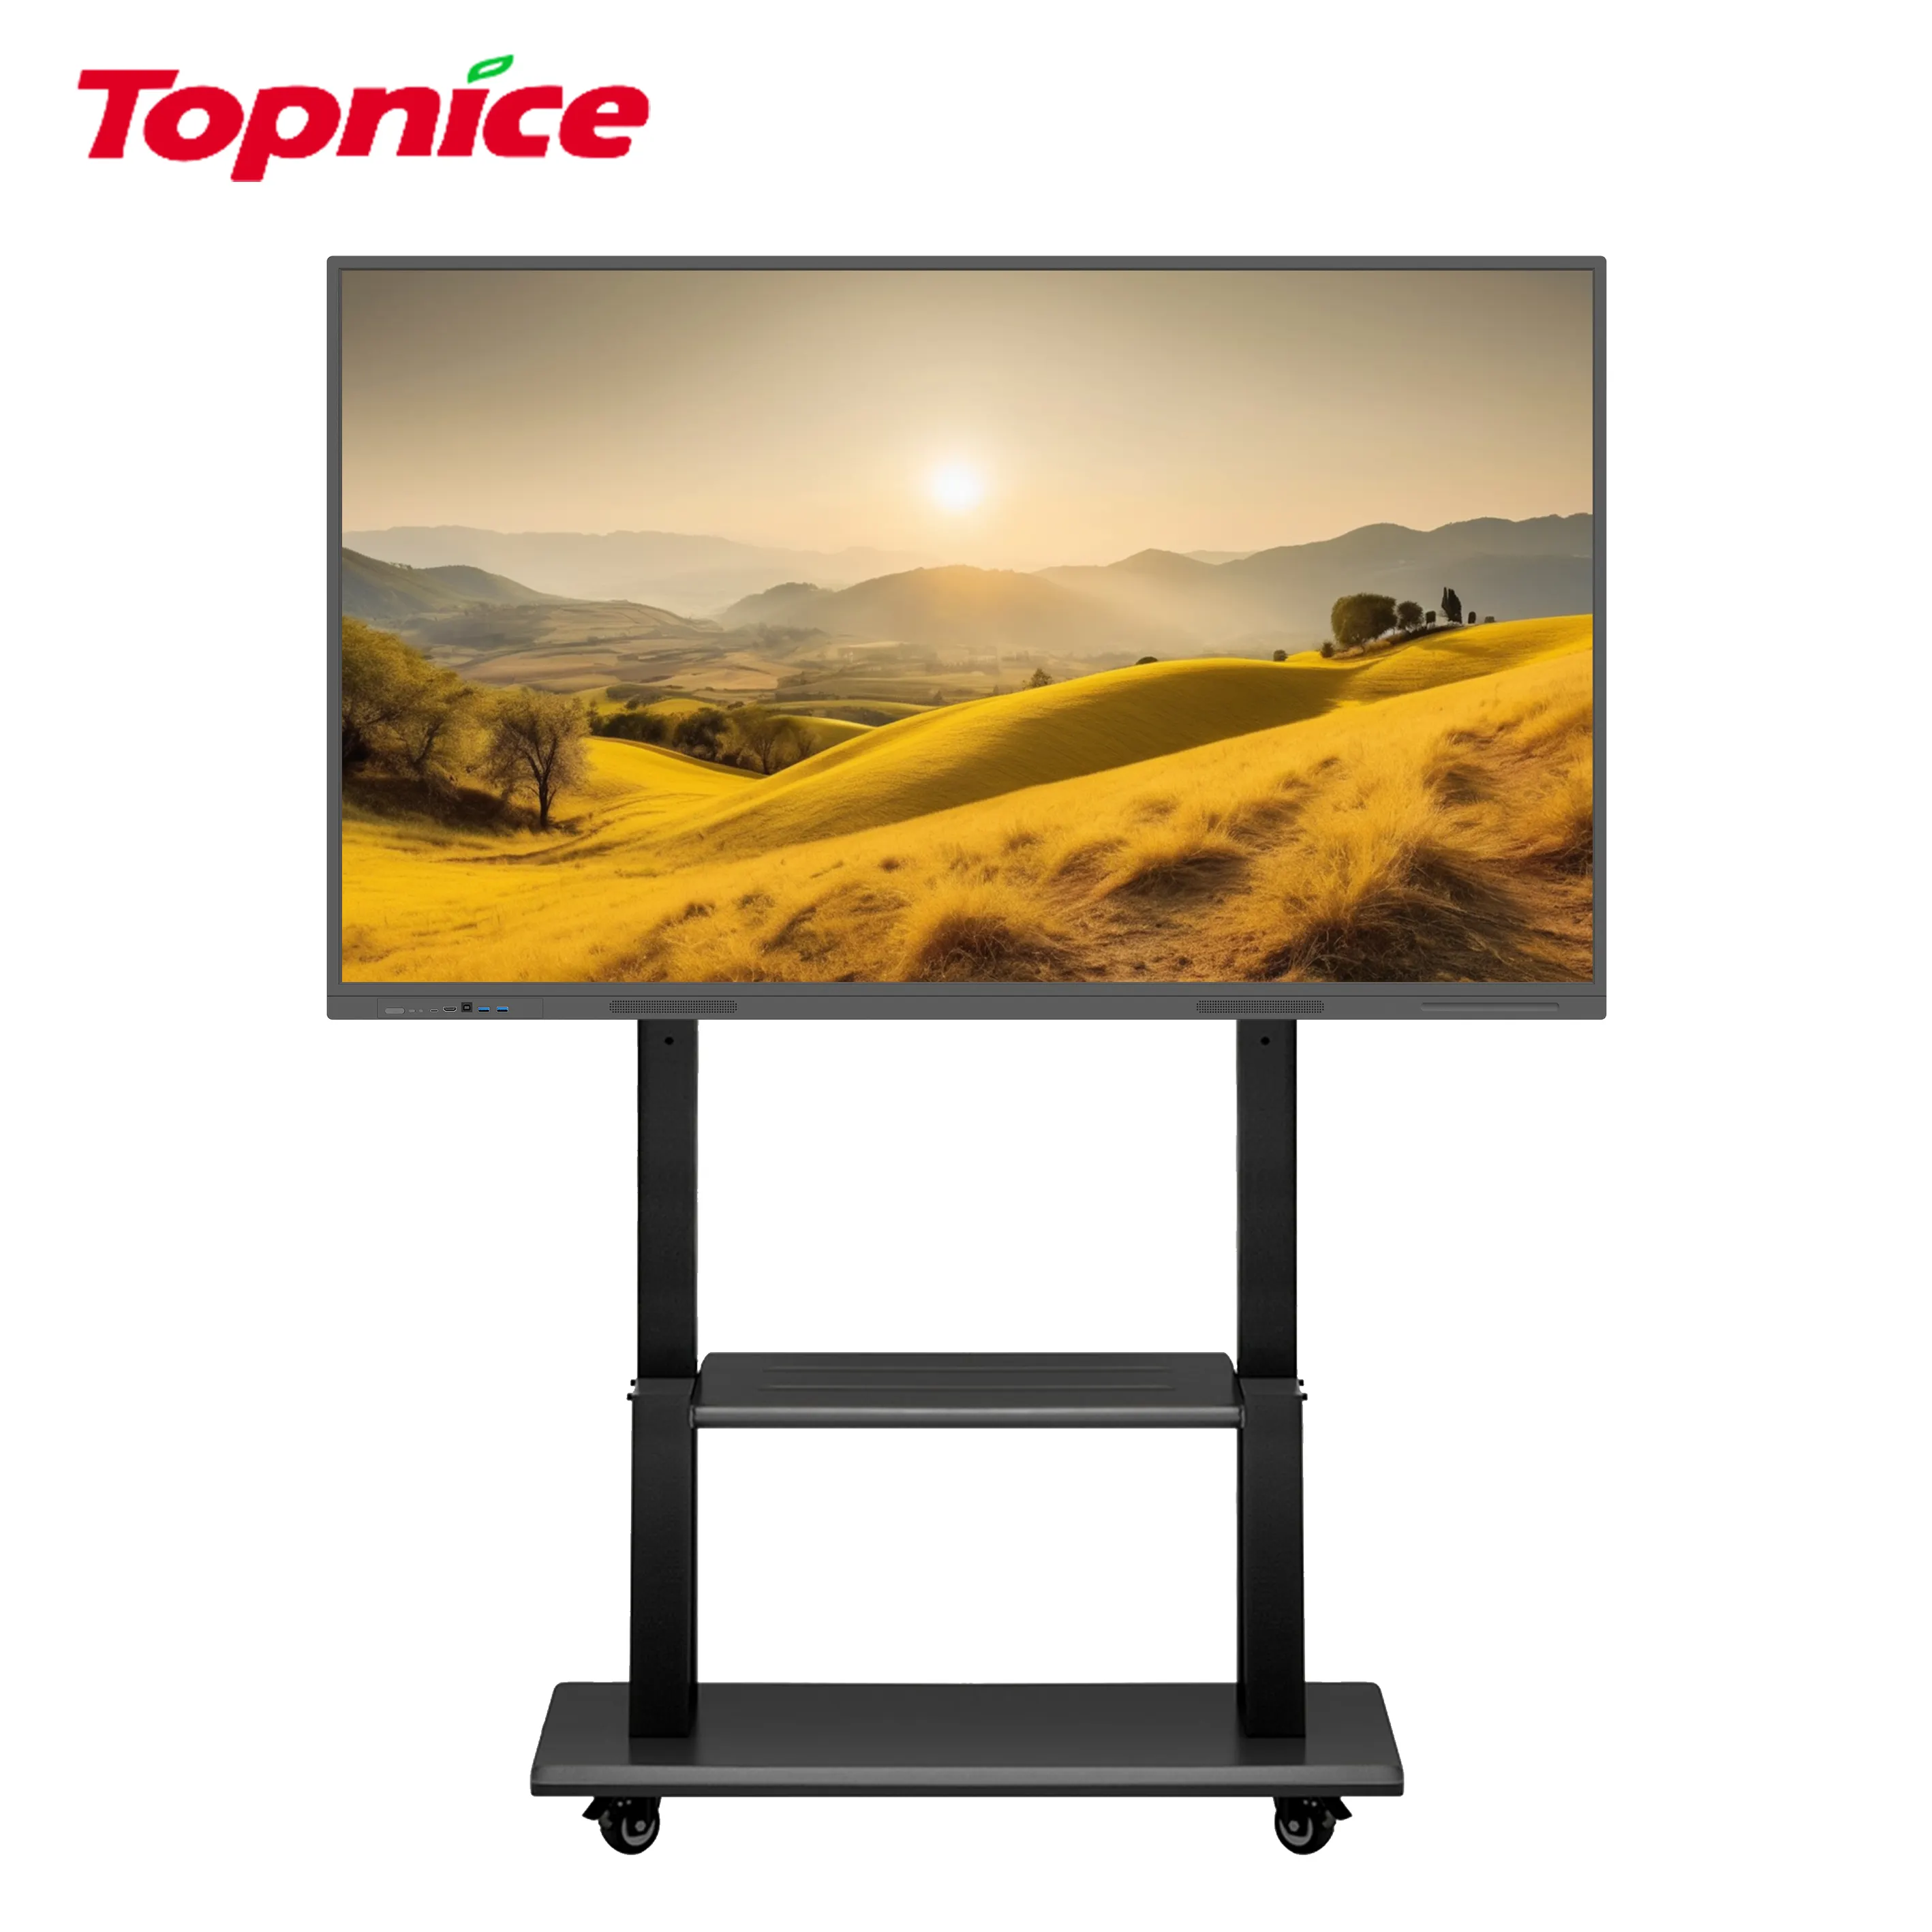 TopNice 터치 스크린 패널 지원 대화 형 디지털 화이트 보드 작성 대형 화면 디지털 가격 디스플레이 보드